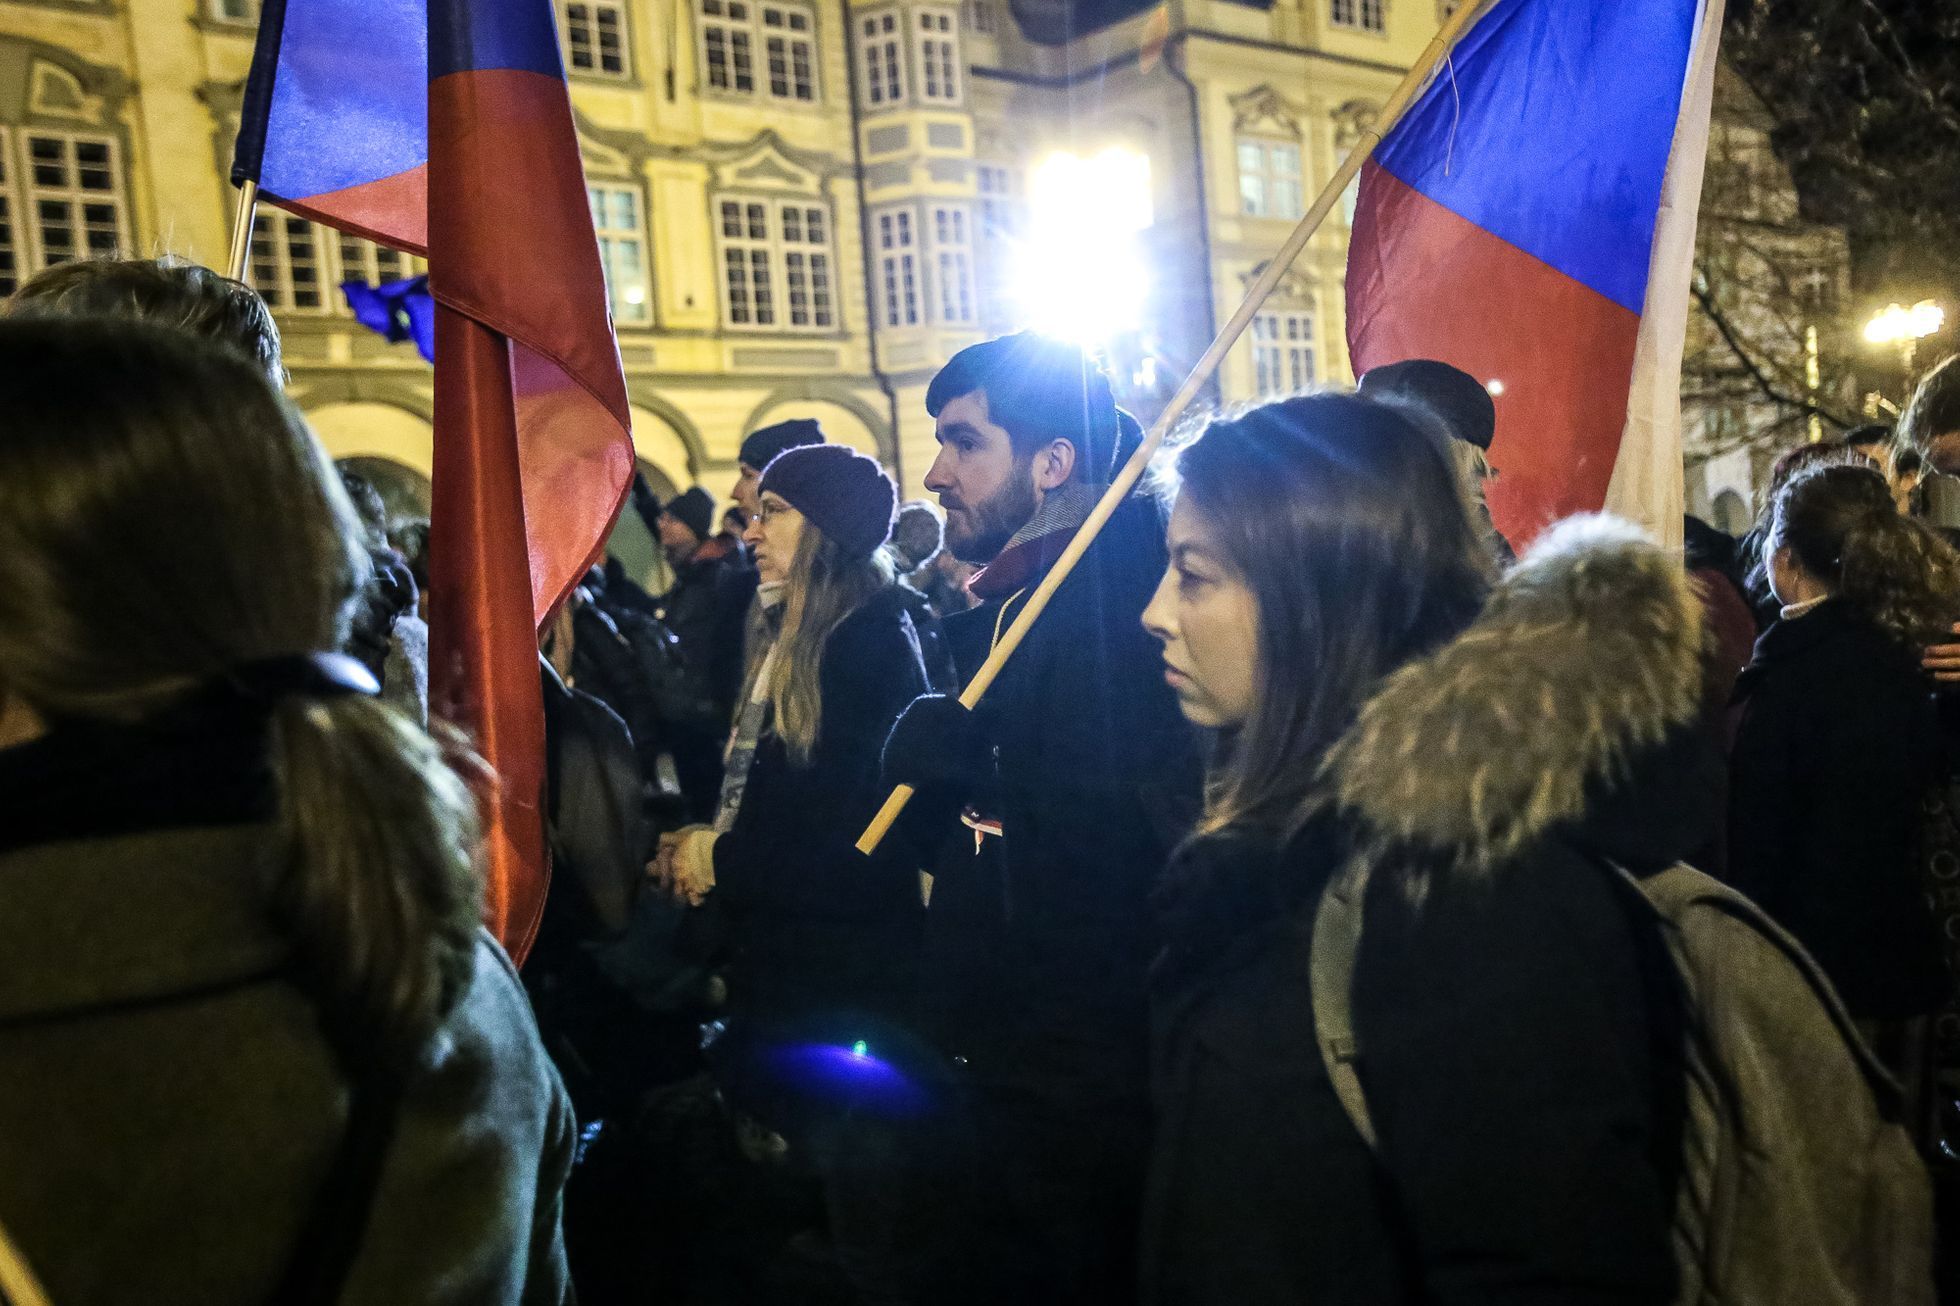 Demonstrace na výročí Palachova týdne proti zvolení Ondráčka do čela GIBS, za vydání Babiše a za Drahoše prezidentem, 16.1.2018